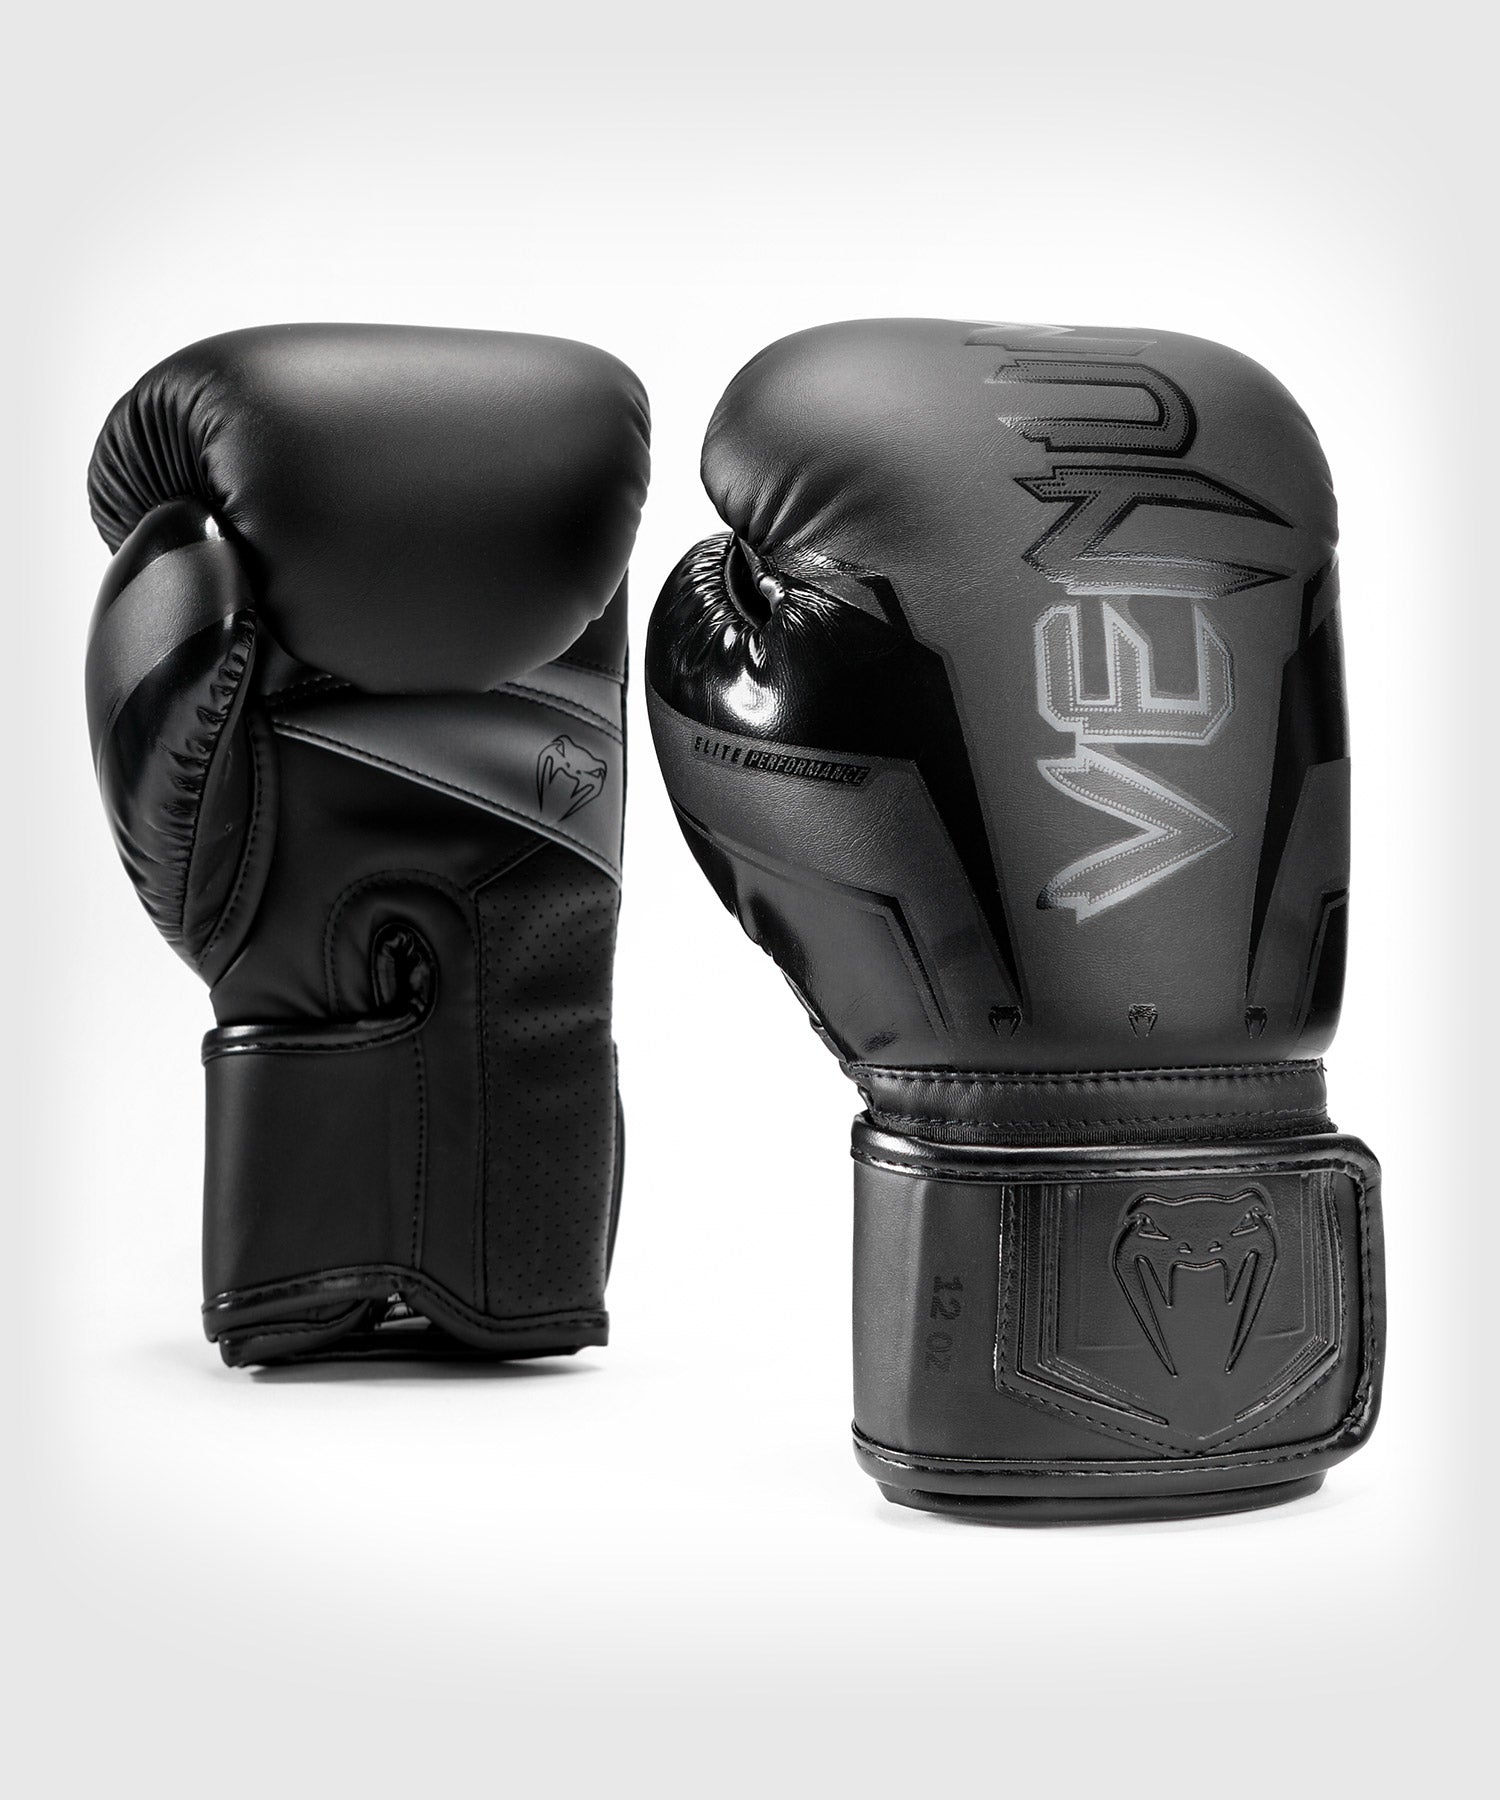 gant de boxe Venum Elite Boxing Gloves 